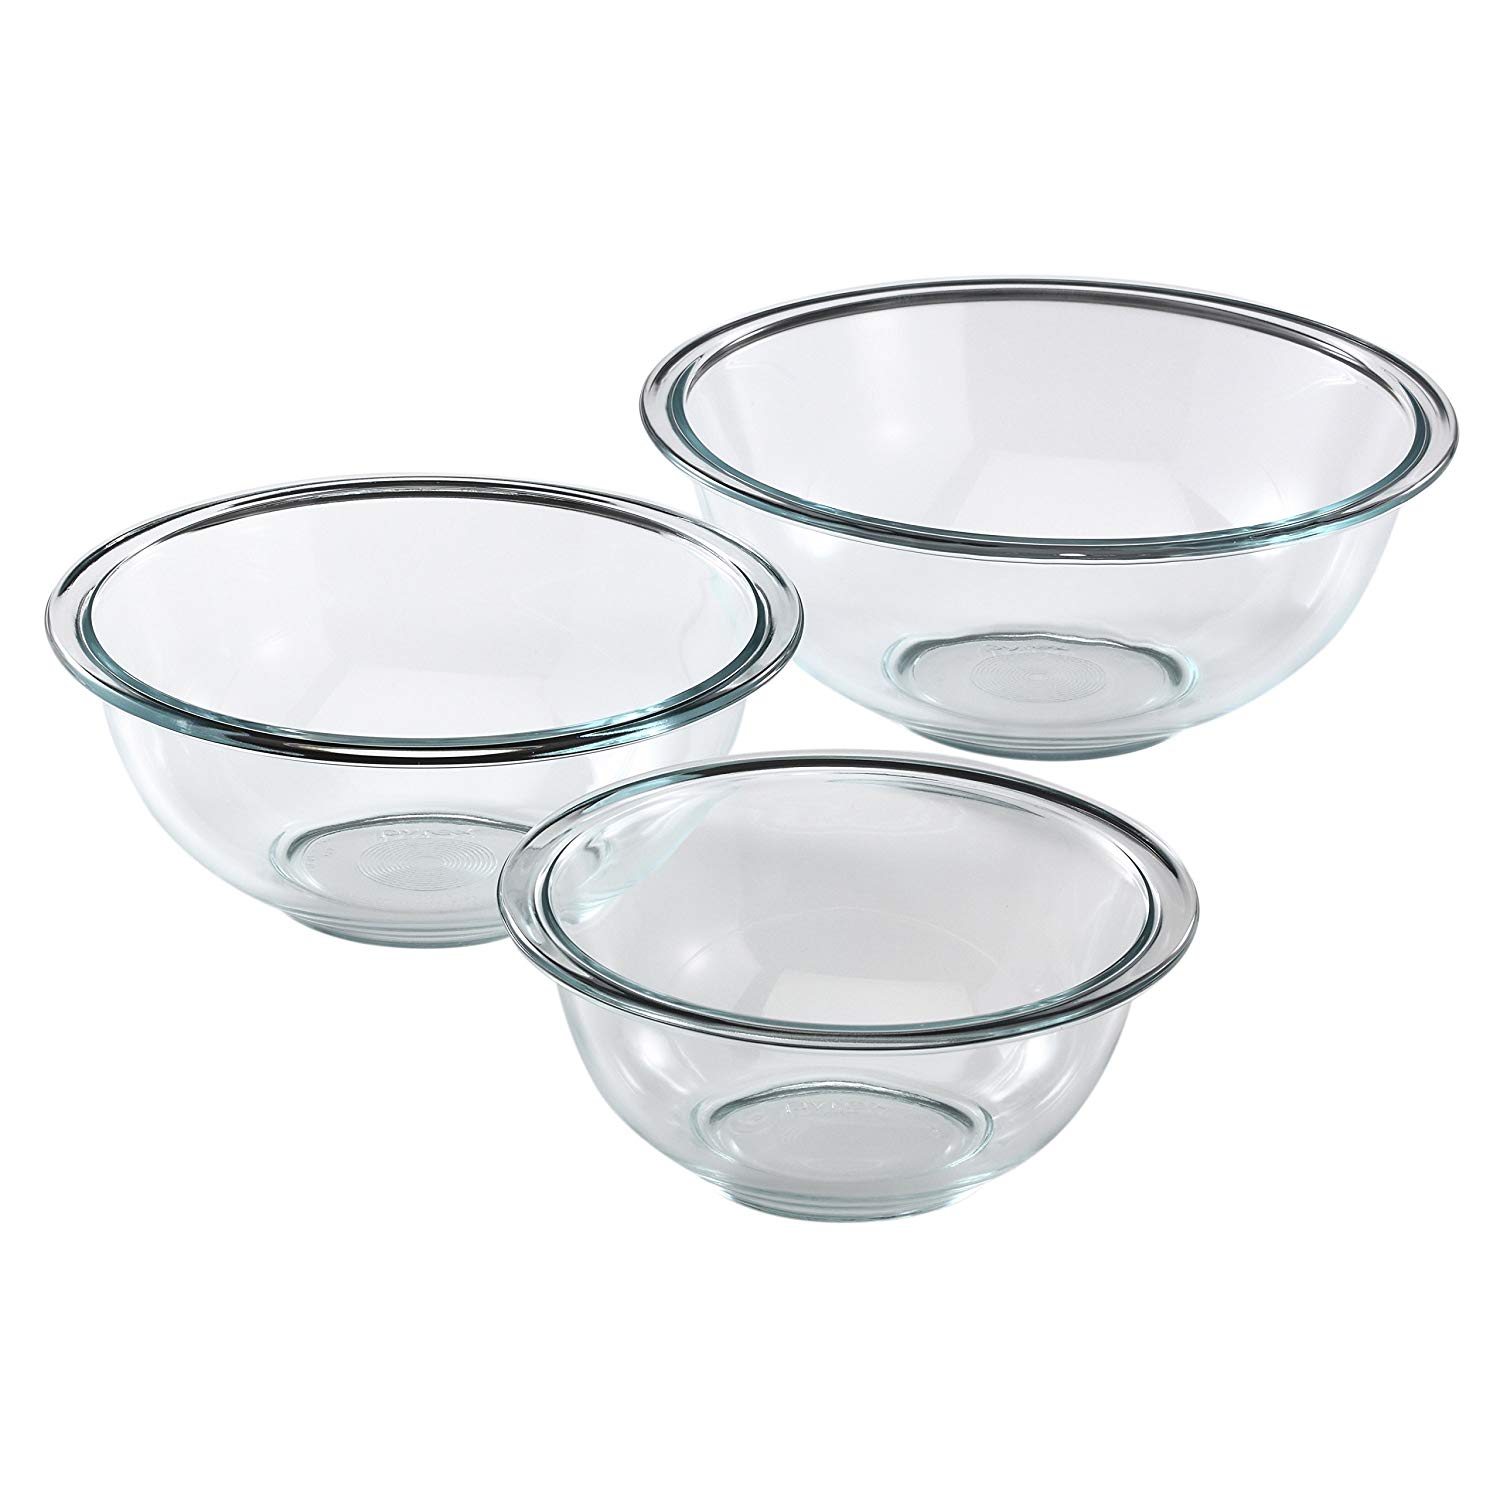 Copy of Pyrex Glass Mixing Bowl Set (3-Piece)